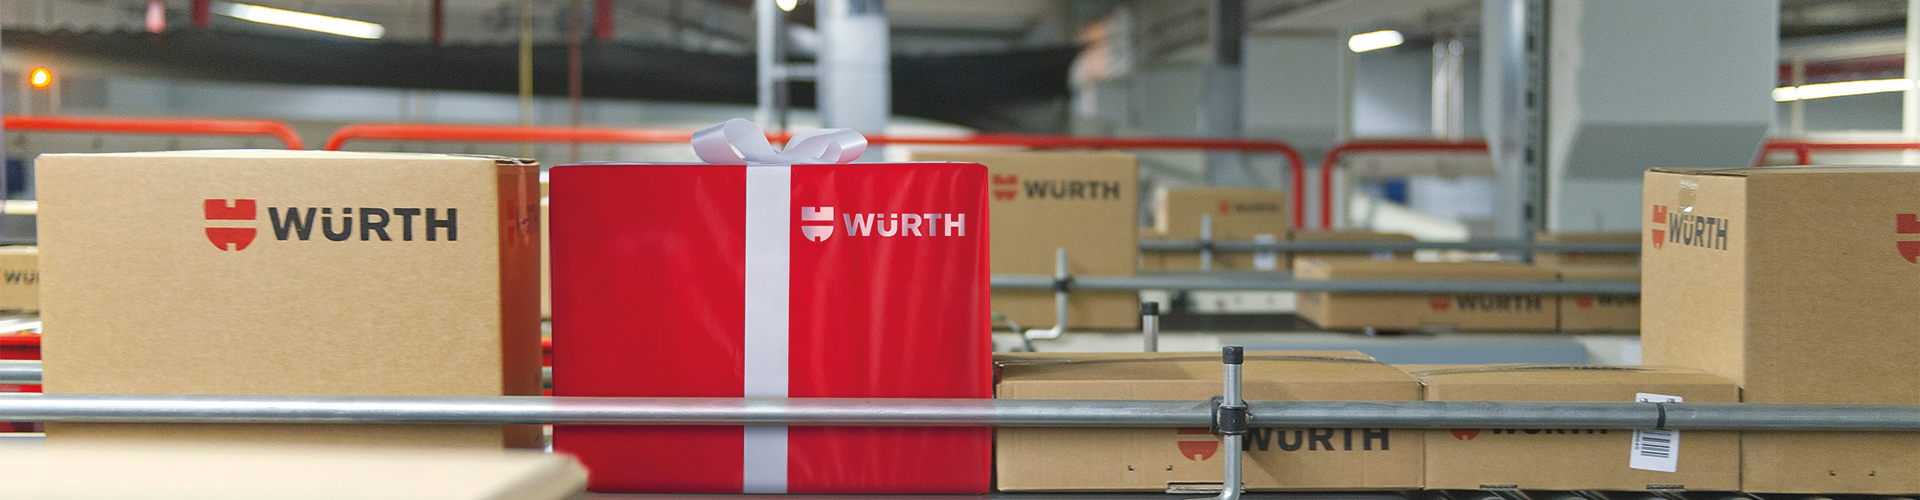 WLC Würth-Logistik competencies